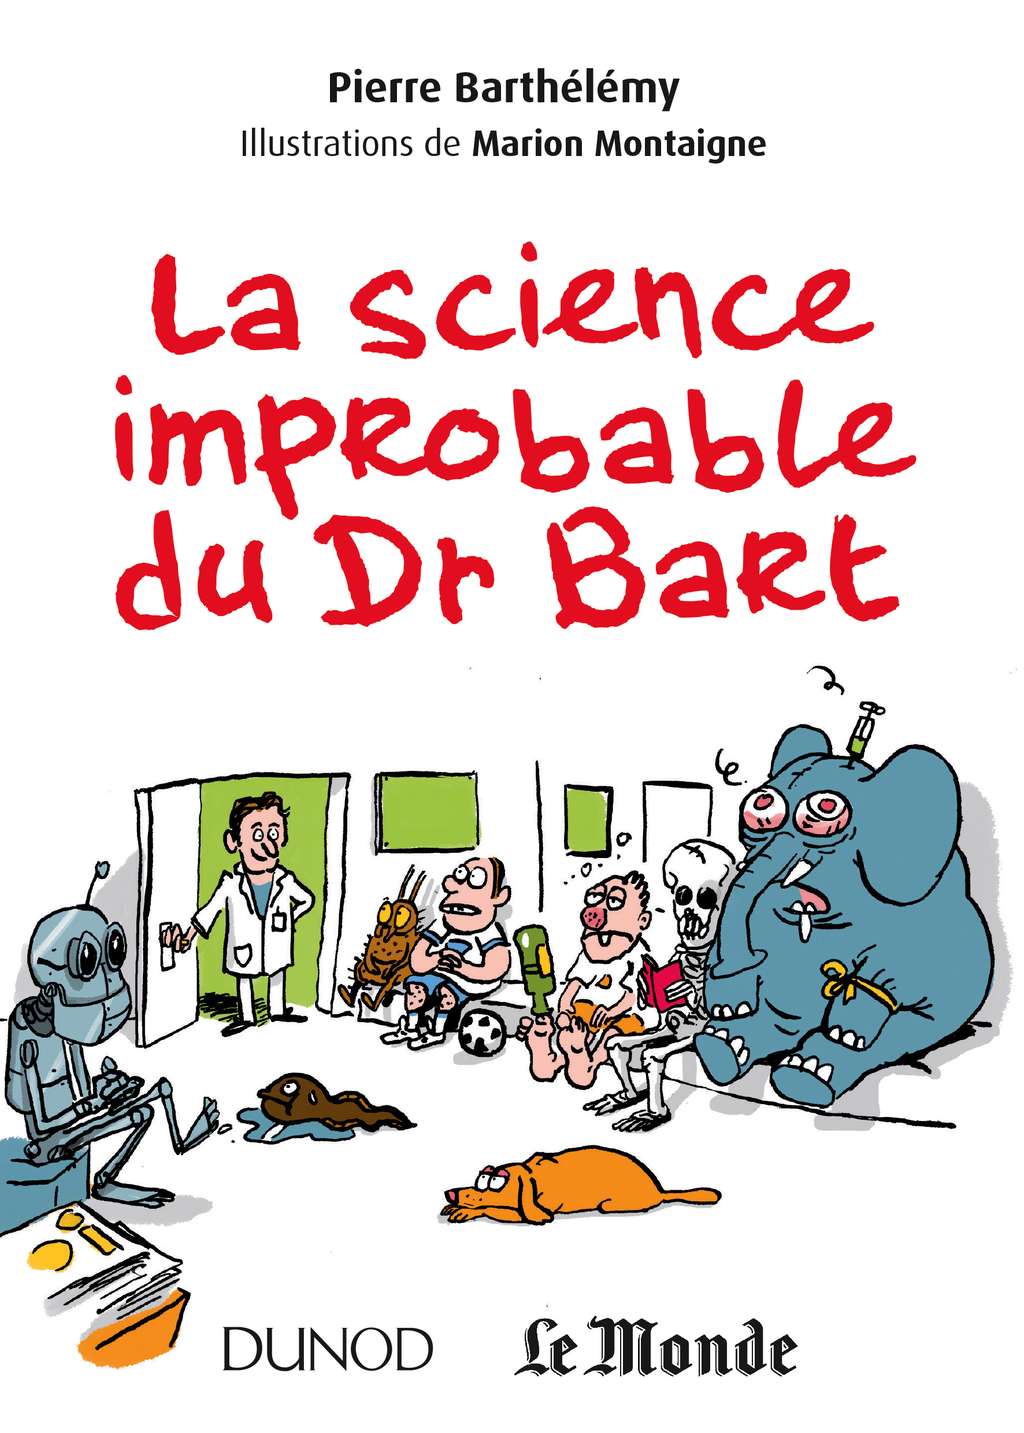 <a href="http://www.dunod.com/sciences-techniques/culture-scientifique/themes/la-science-improbable-du-dr-bart" title="La science improbable du Dr Bart" target="_blank">Cliquez pour acheter le livre <em>La science improbable du Dr Bart</em></a>.